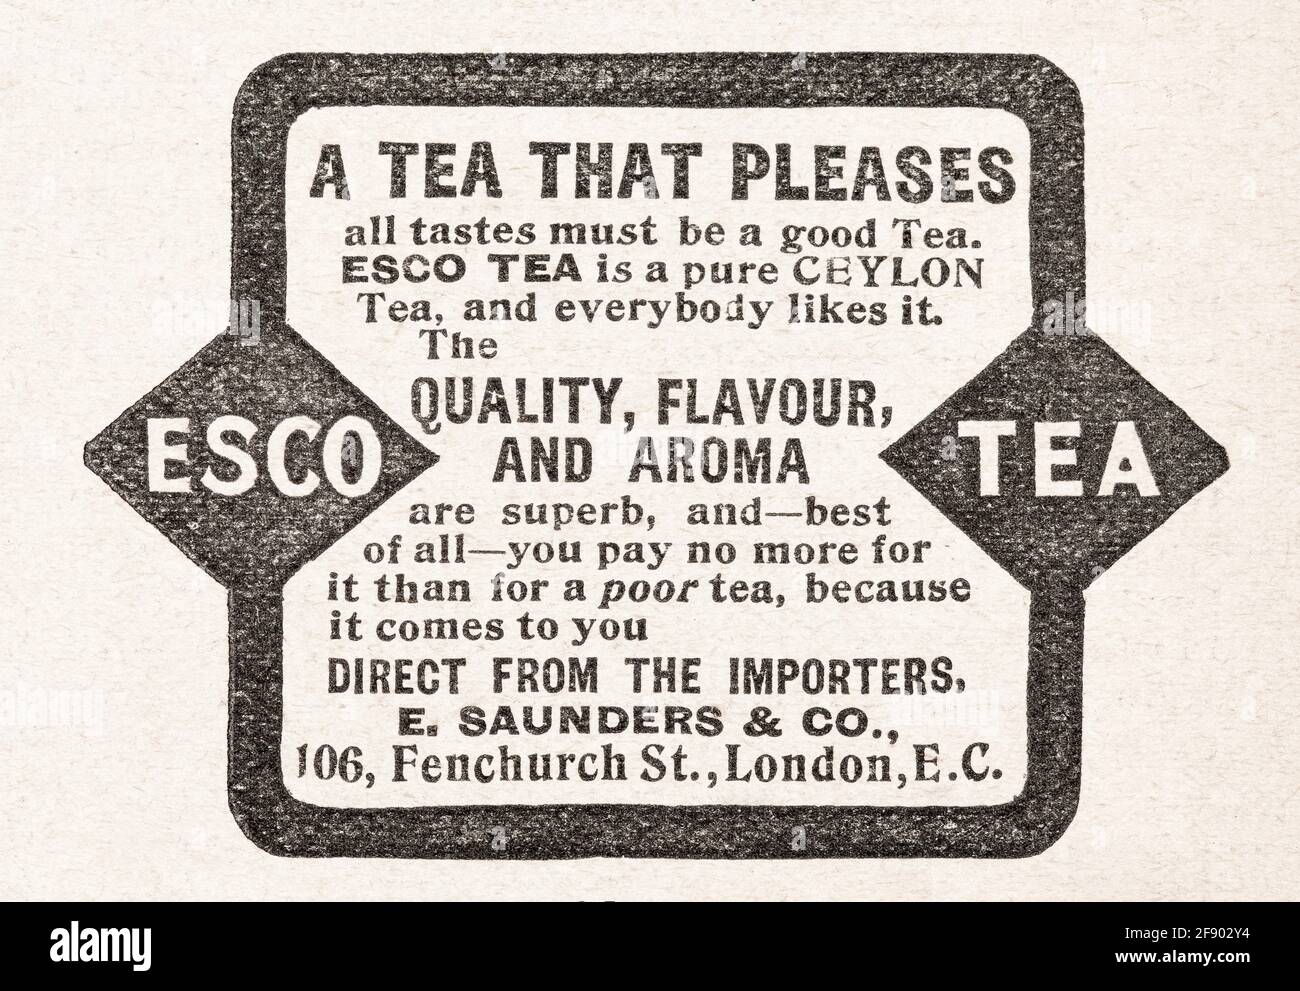 Vecchia rivista vittoriana d'epoca Esco Ceylon Tea pubblicità dal 1902 - standard pre-pubblicità. Per i marchi alimentari dimenticati. Foto Stock